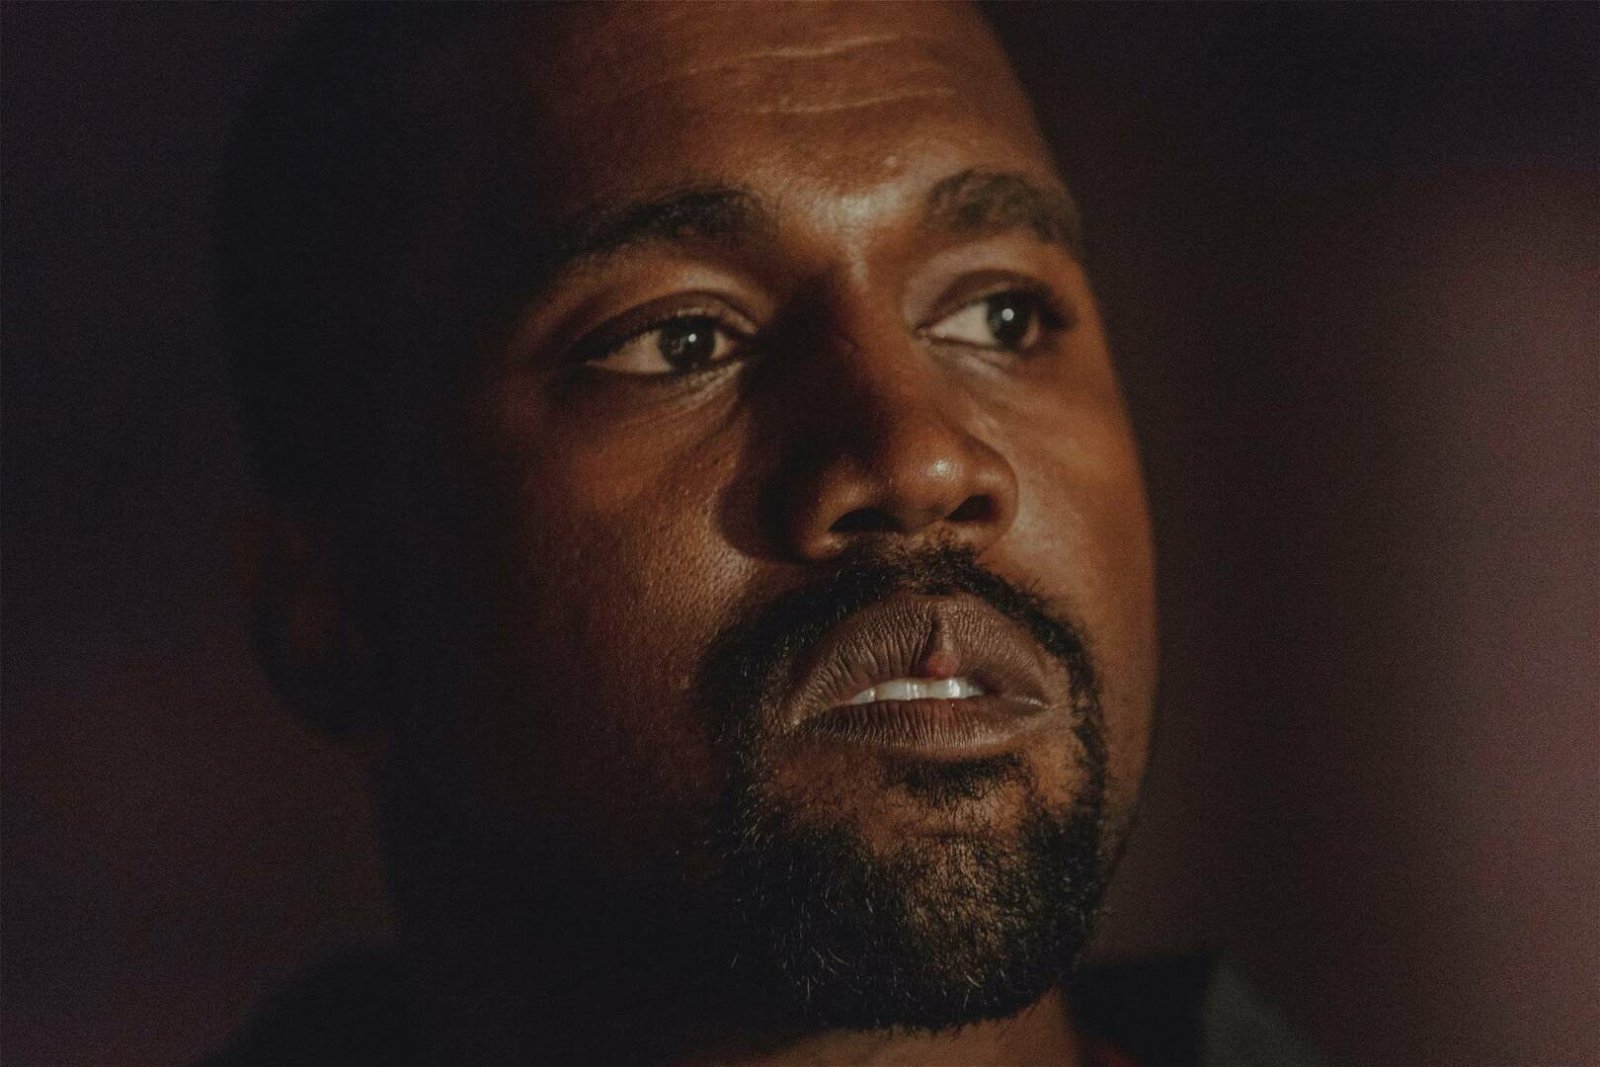 Immagine di Jeen-yuhs: la clip esclusiva sulla docuserie Netflix su Kanye West